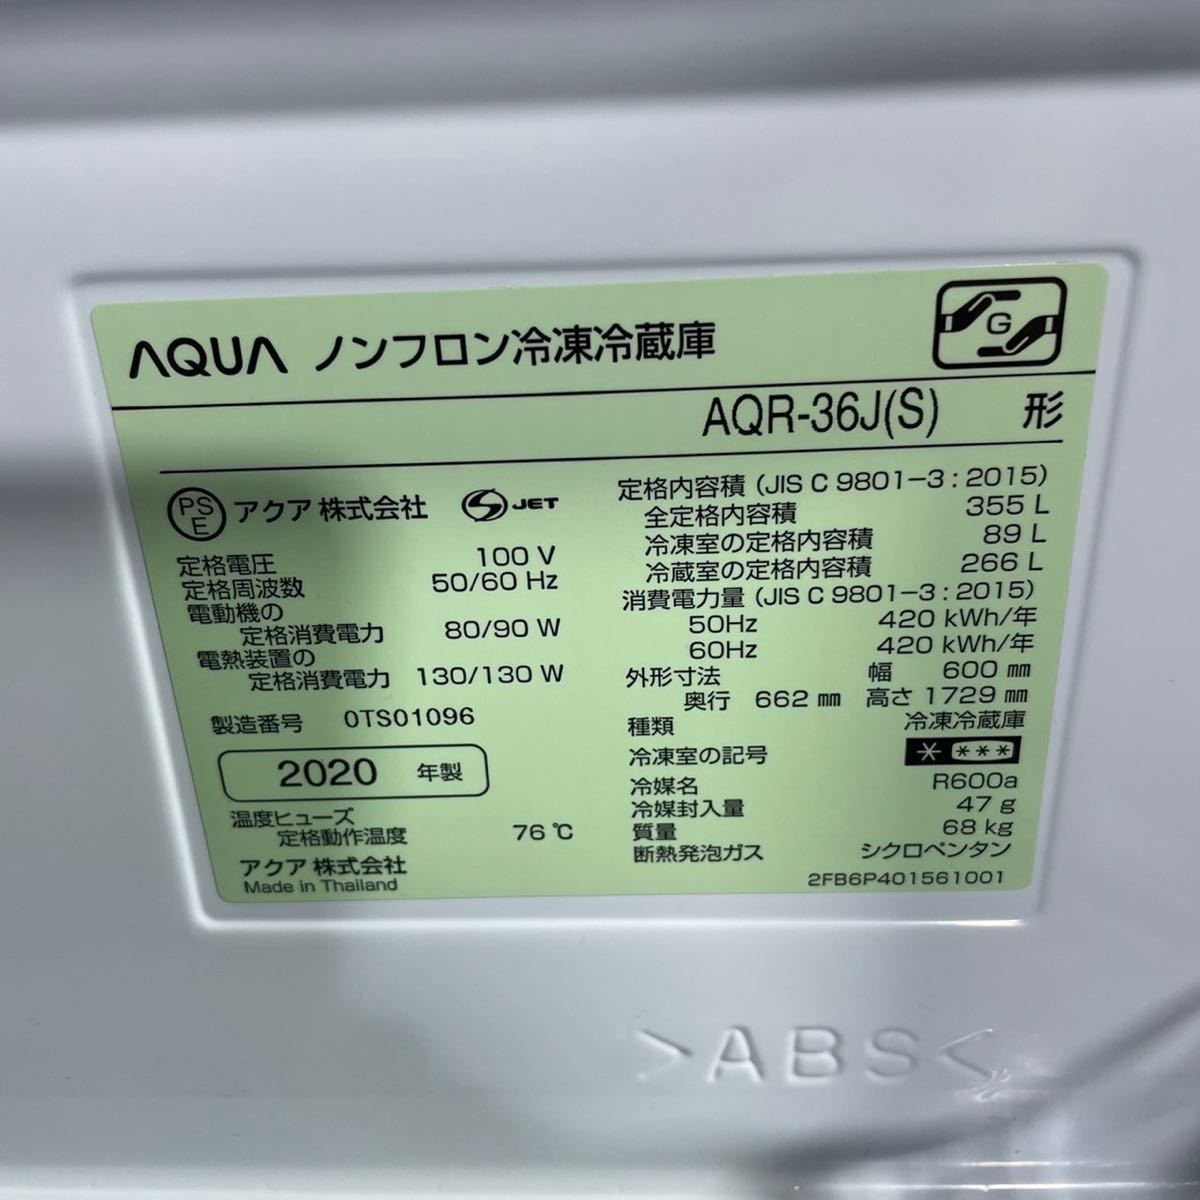 27795円 日本正規代理店品 AQUA アクア 冷蔵庫 AQR-36J 355L 2020年製 家電 4ドア